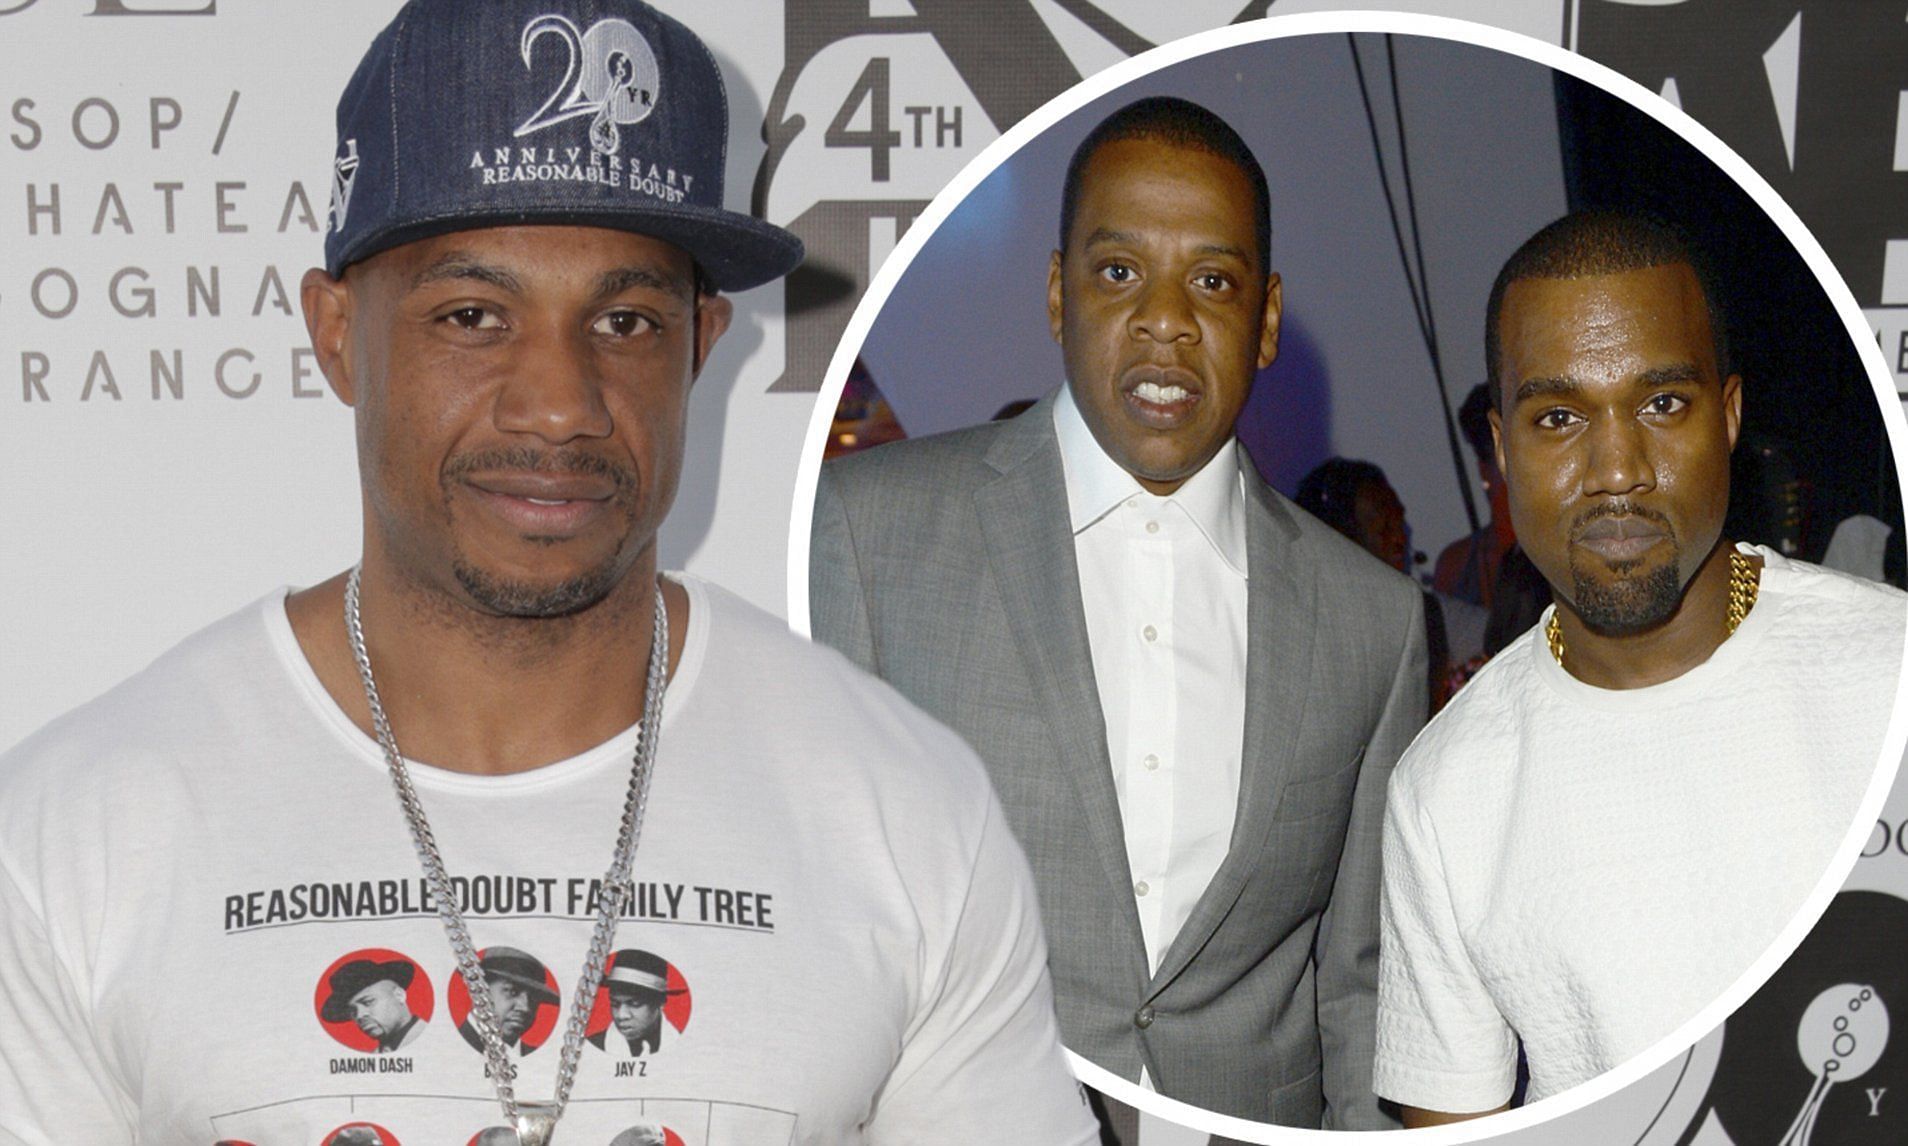 Kareem Burke, Kanye West, and Jay-Z (image via Getty Images)